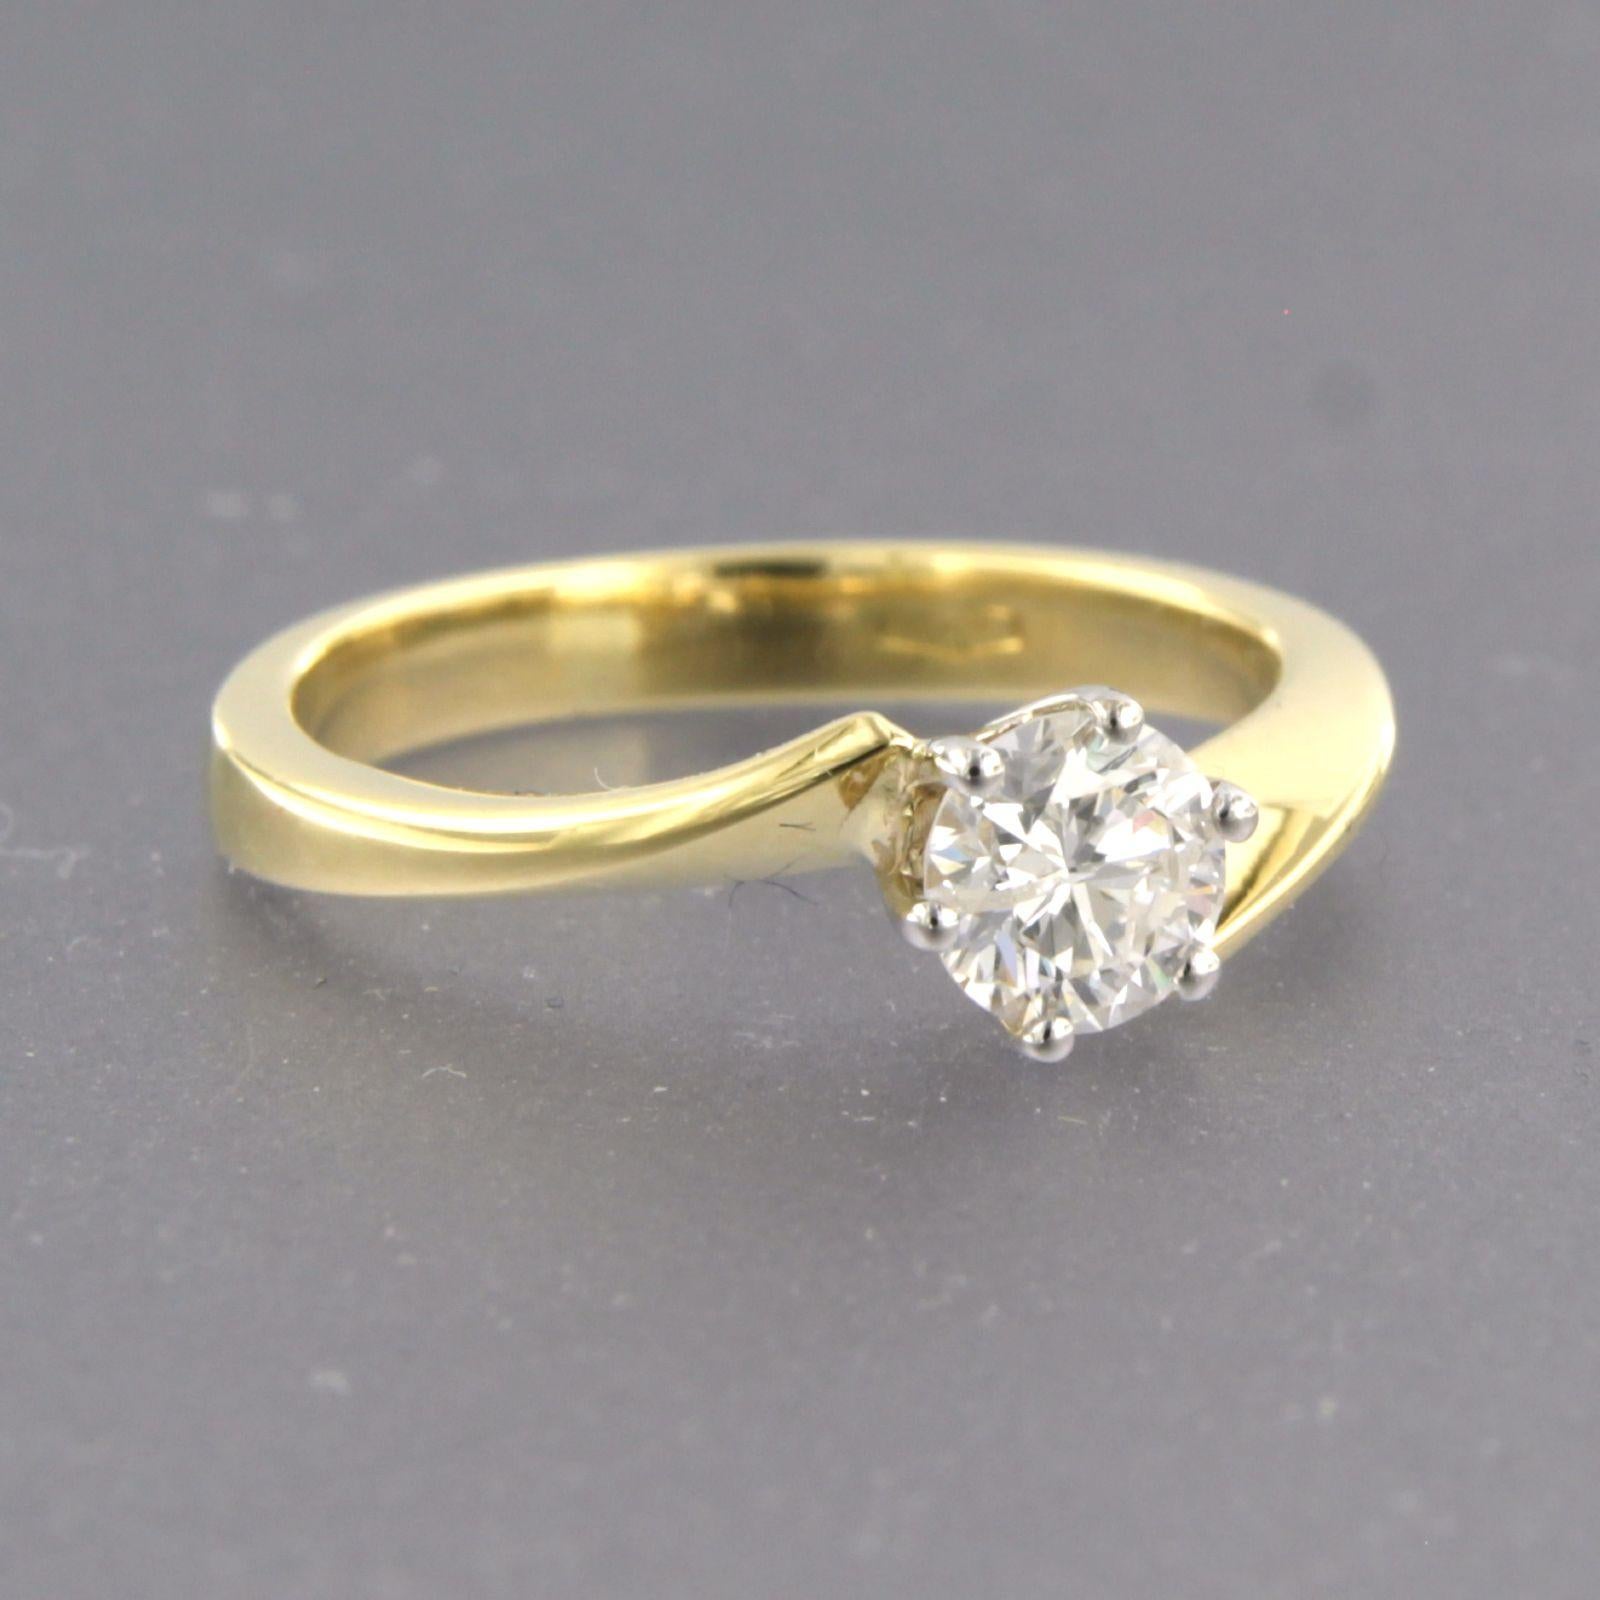 Bague solitaire en or bicolore 18k sertie de diamants taille brillant jusqu'à . 0.50ct - F/G - P1 - taille de bague U.S. 5.25 - EU. 16(50)

description détaillée :

le haut de l'anneau mesure 5,9 mm de large et 5,5 mm de haut

Taille de la bague :